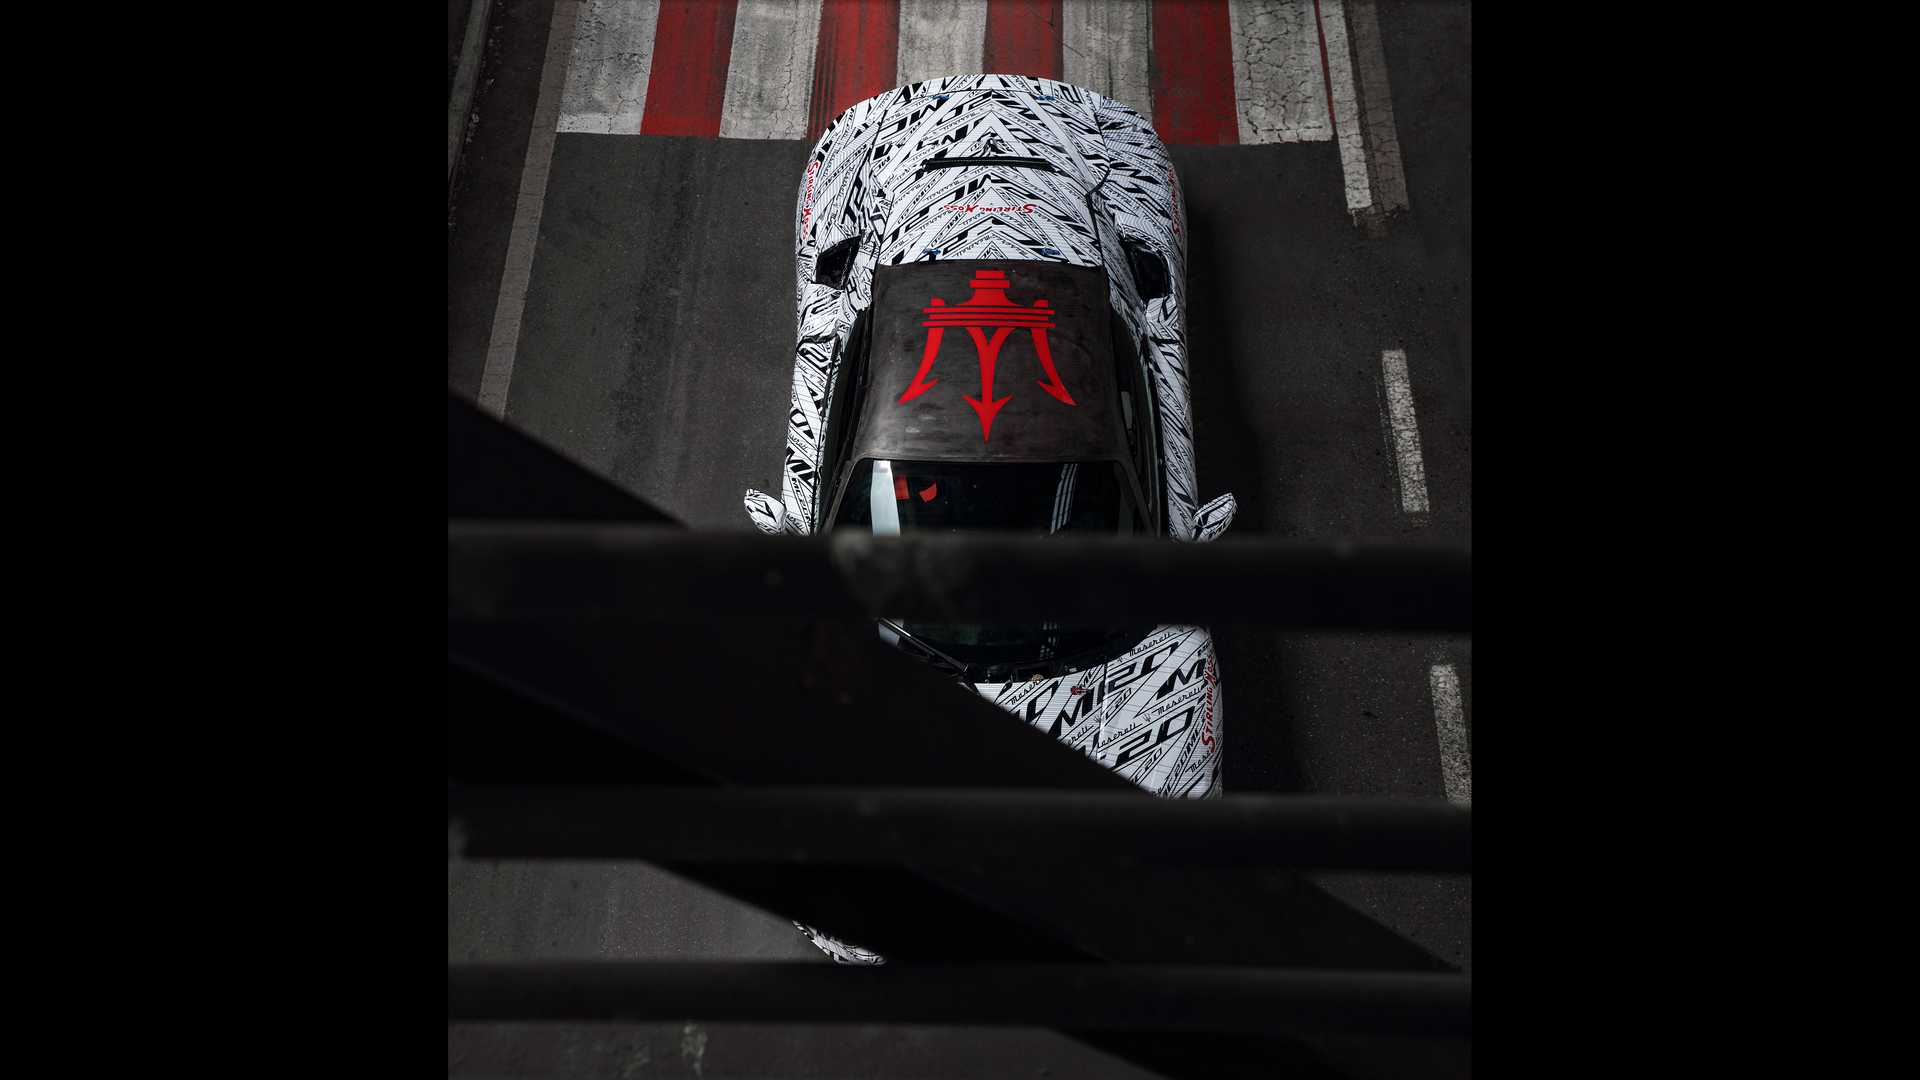 เท่ทุกกระเบียดนิ้ว! Maserati MC20 ต้นแบบสุดสเปเชียลรำลึกถึงนักแข่งระดับตำนาน